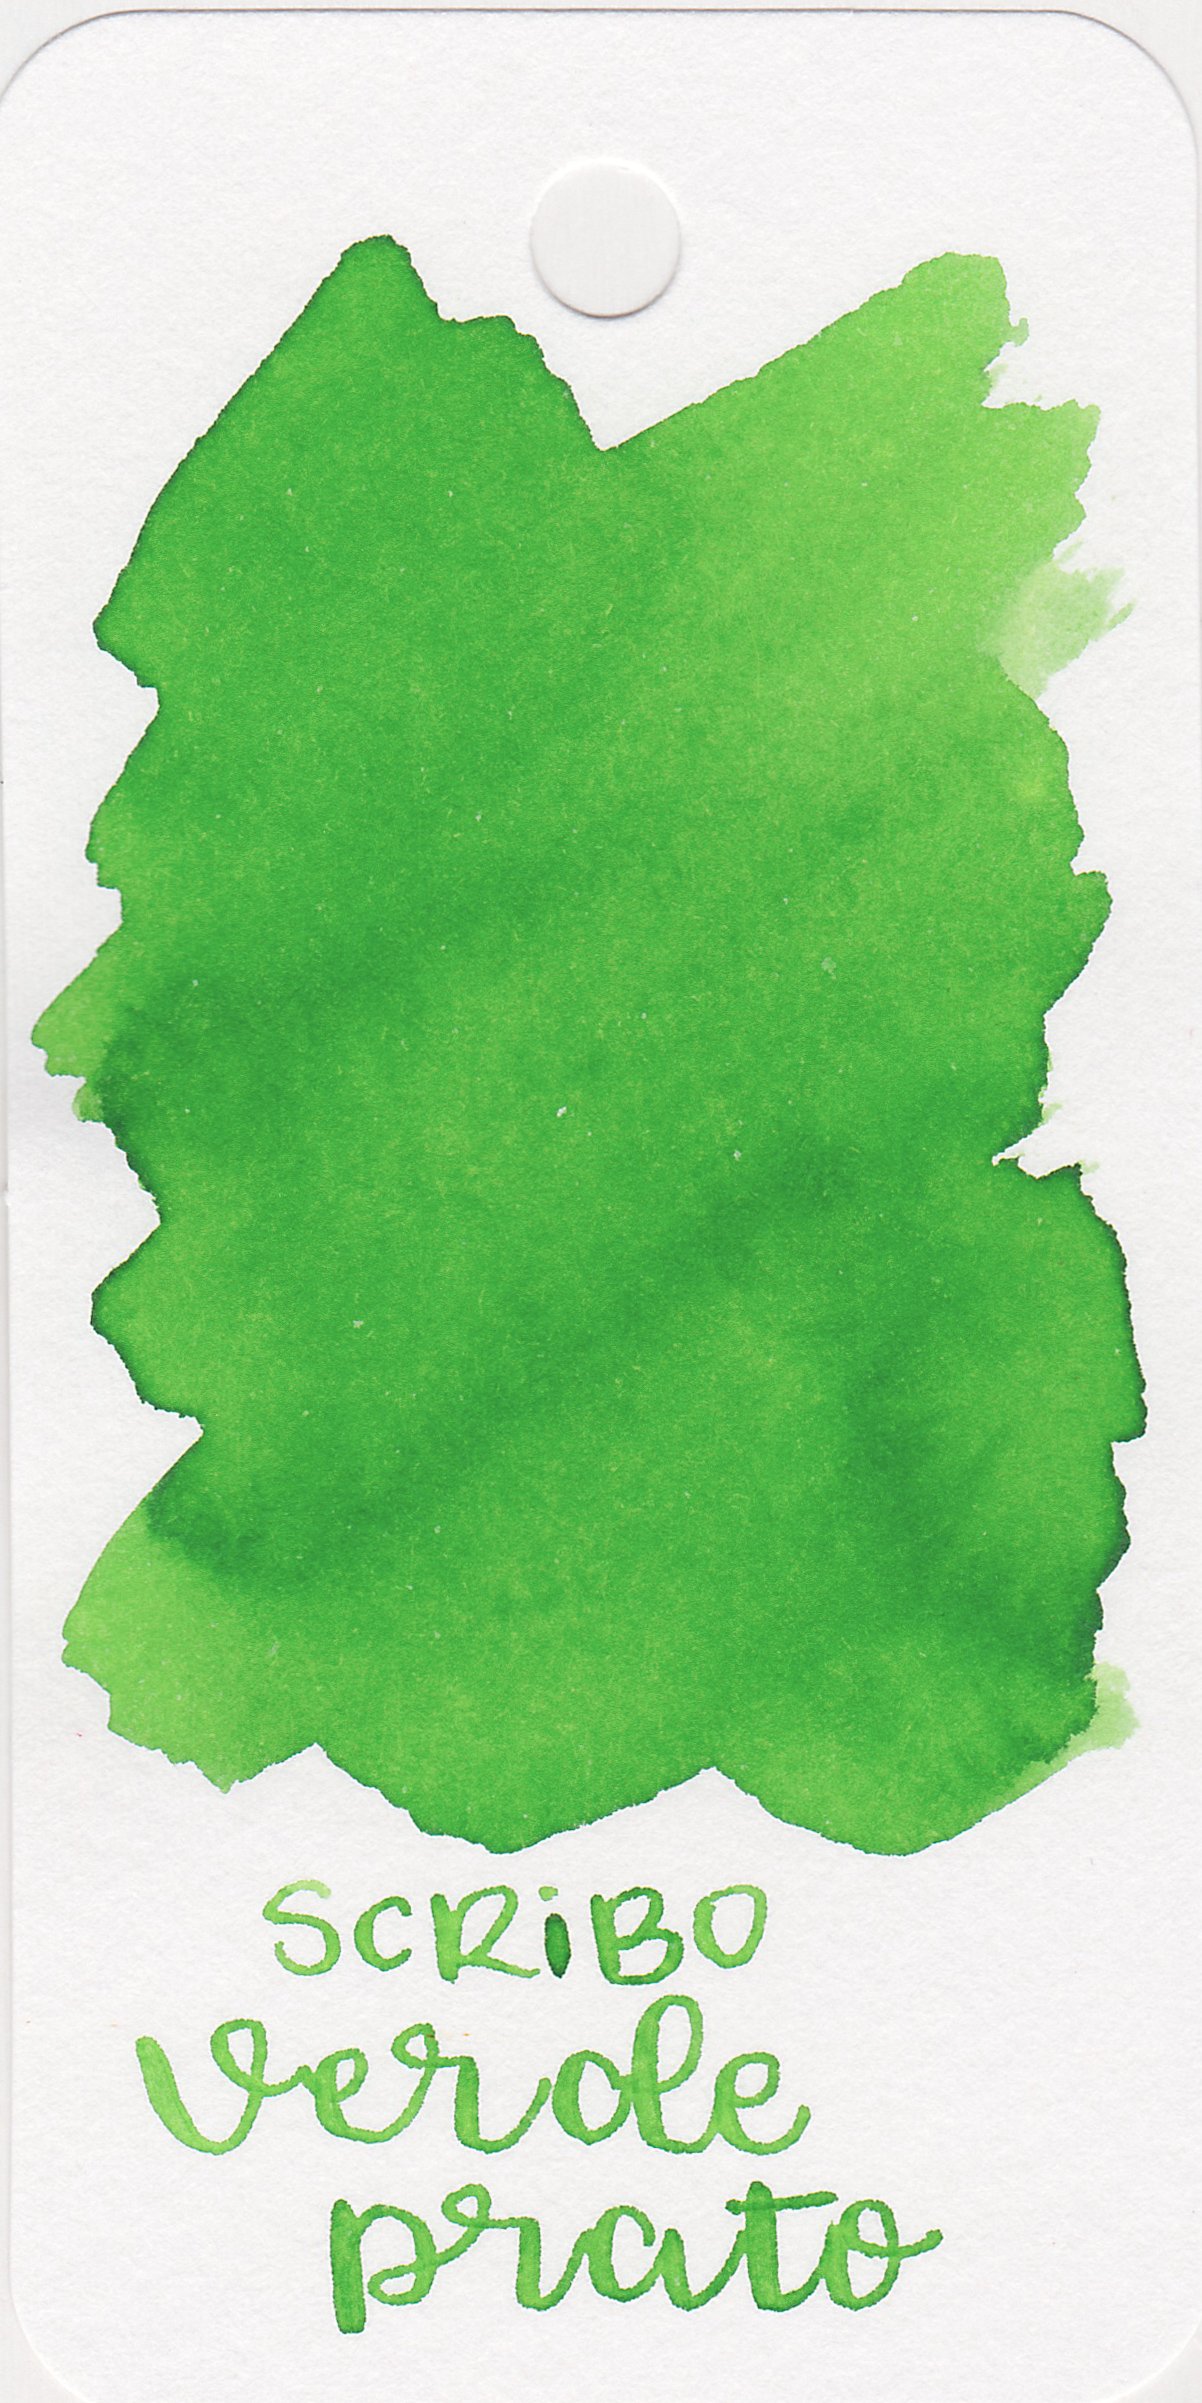 scr-verde-prato-1.jpg